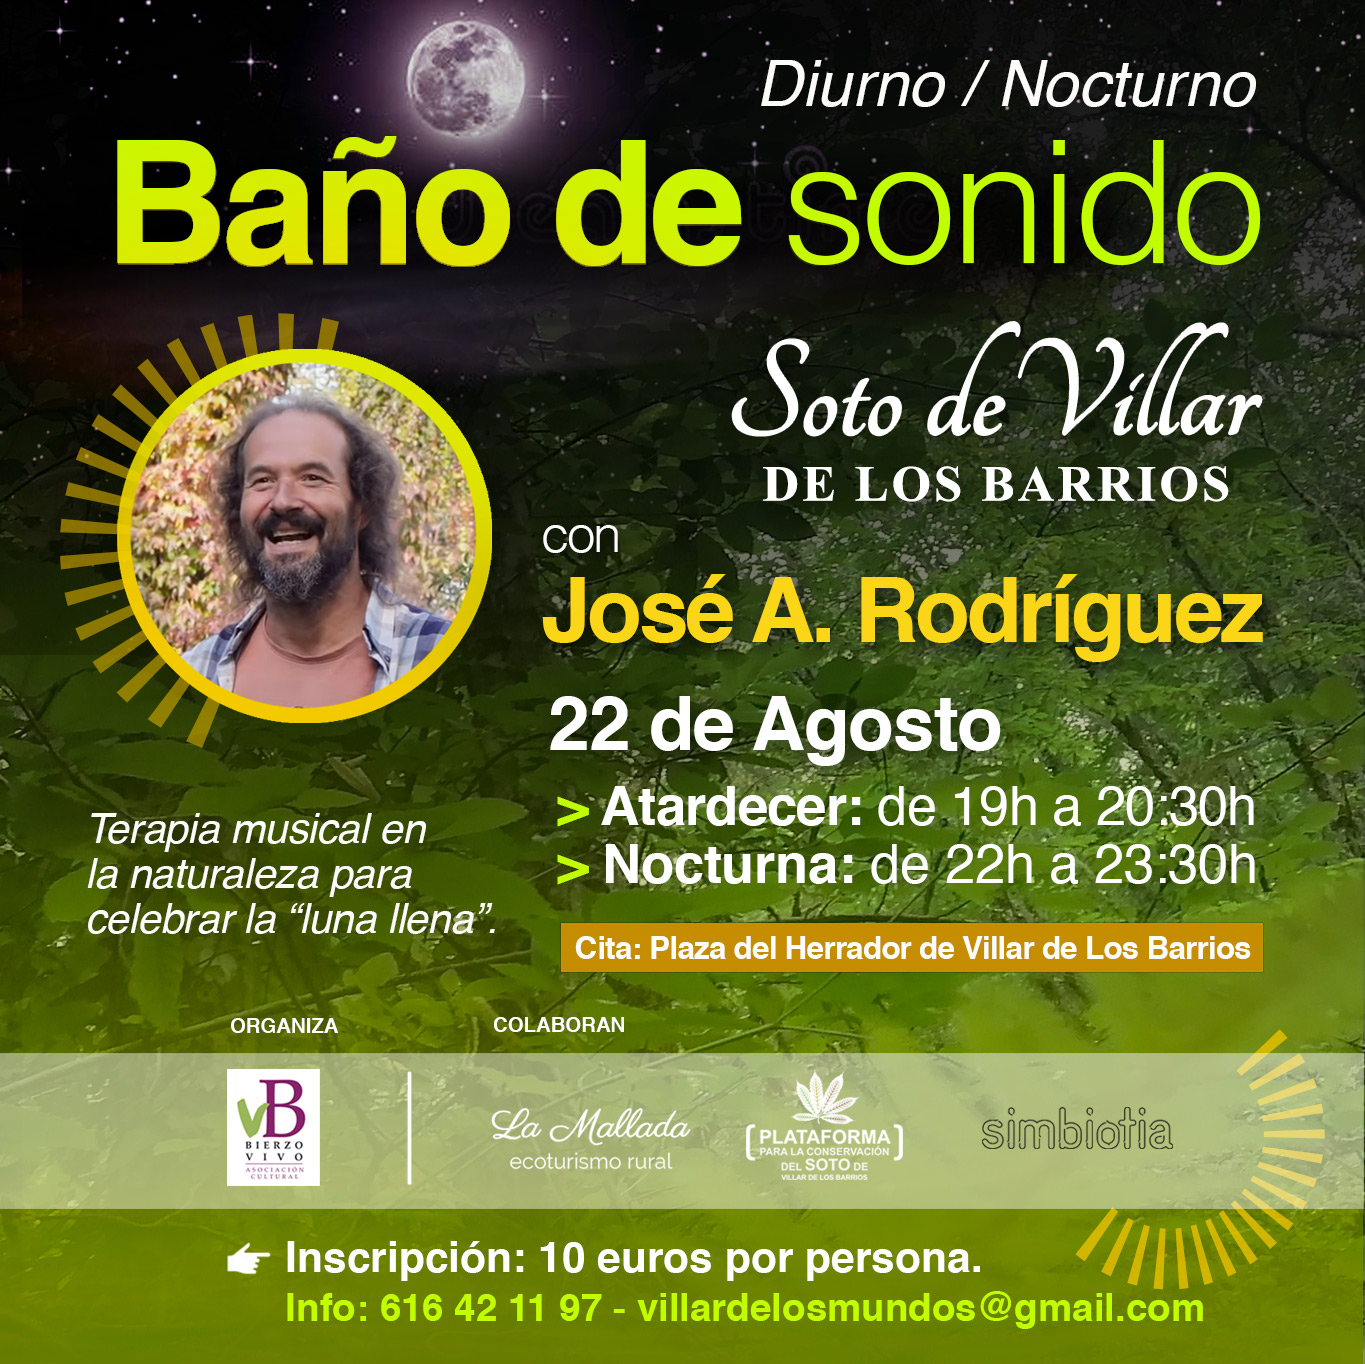 El Soto de Villar organiza una Terapia musical en la naturaleza para celebrar la “luna llena” 2